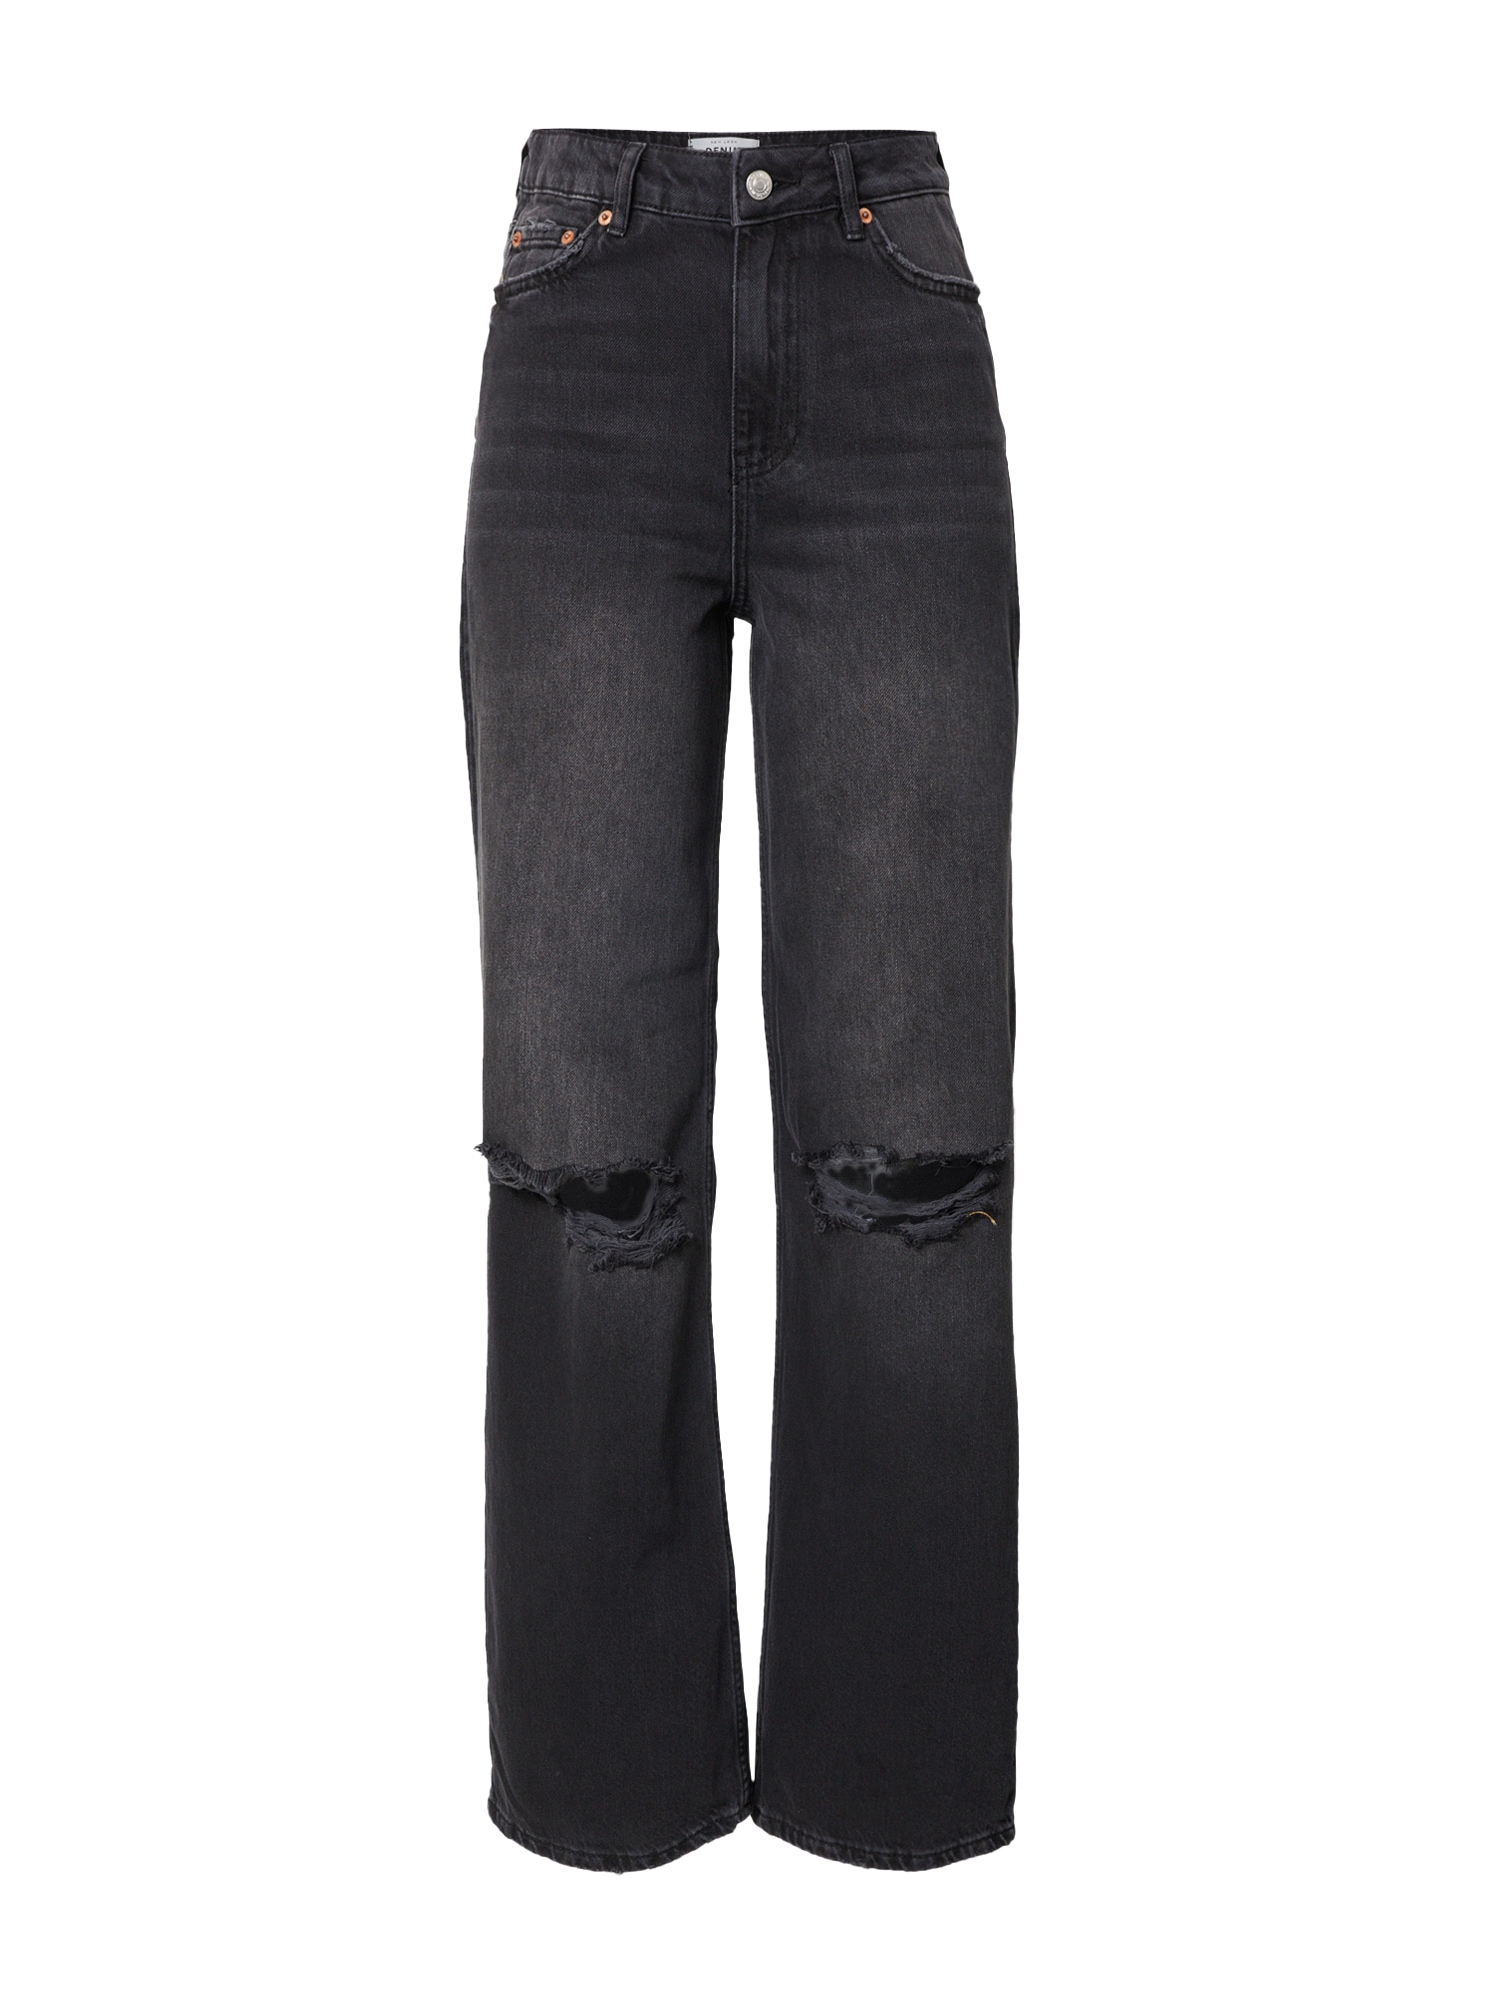 Jeans 'BARATHEON' von New Look